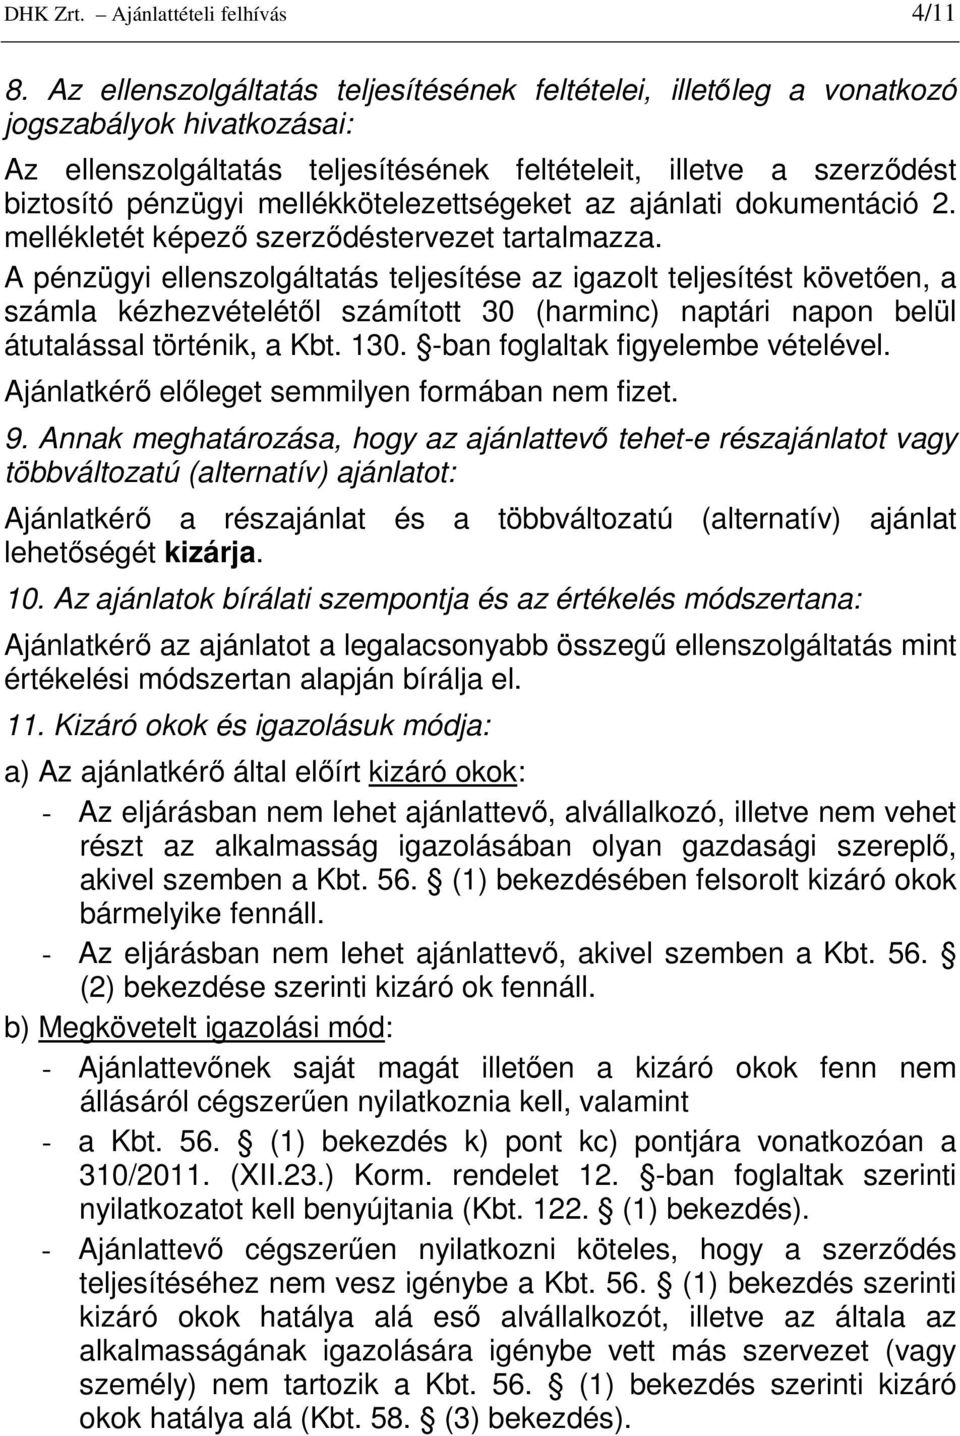 mellékkötelezettségeket az ajánlati dokumentáció 2. mellékletét képezı szerzıdéstervezet tartalmazza.